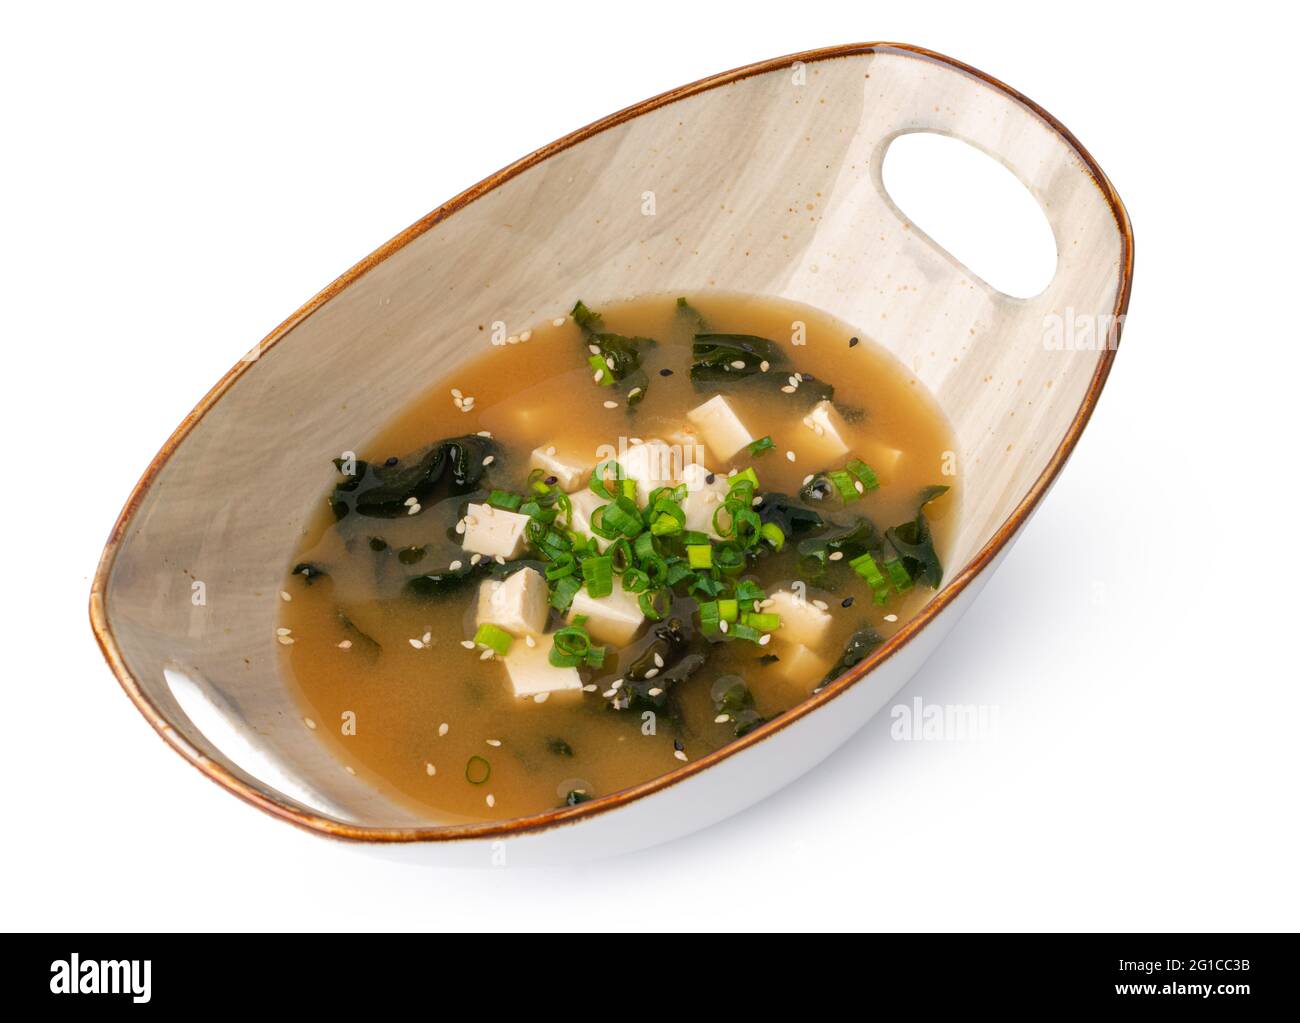 Japanische Miso-Suppe in Schale isoliert auf weiß Stockfotografie - Alamy